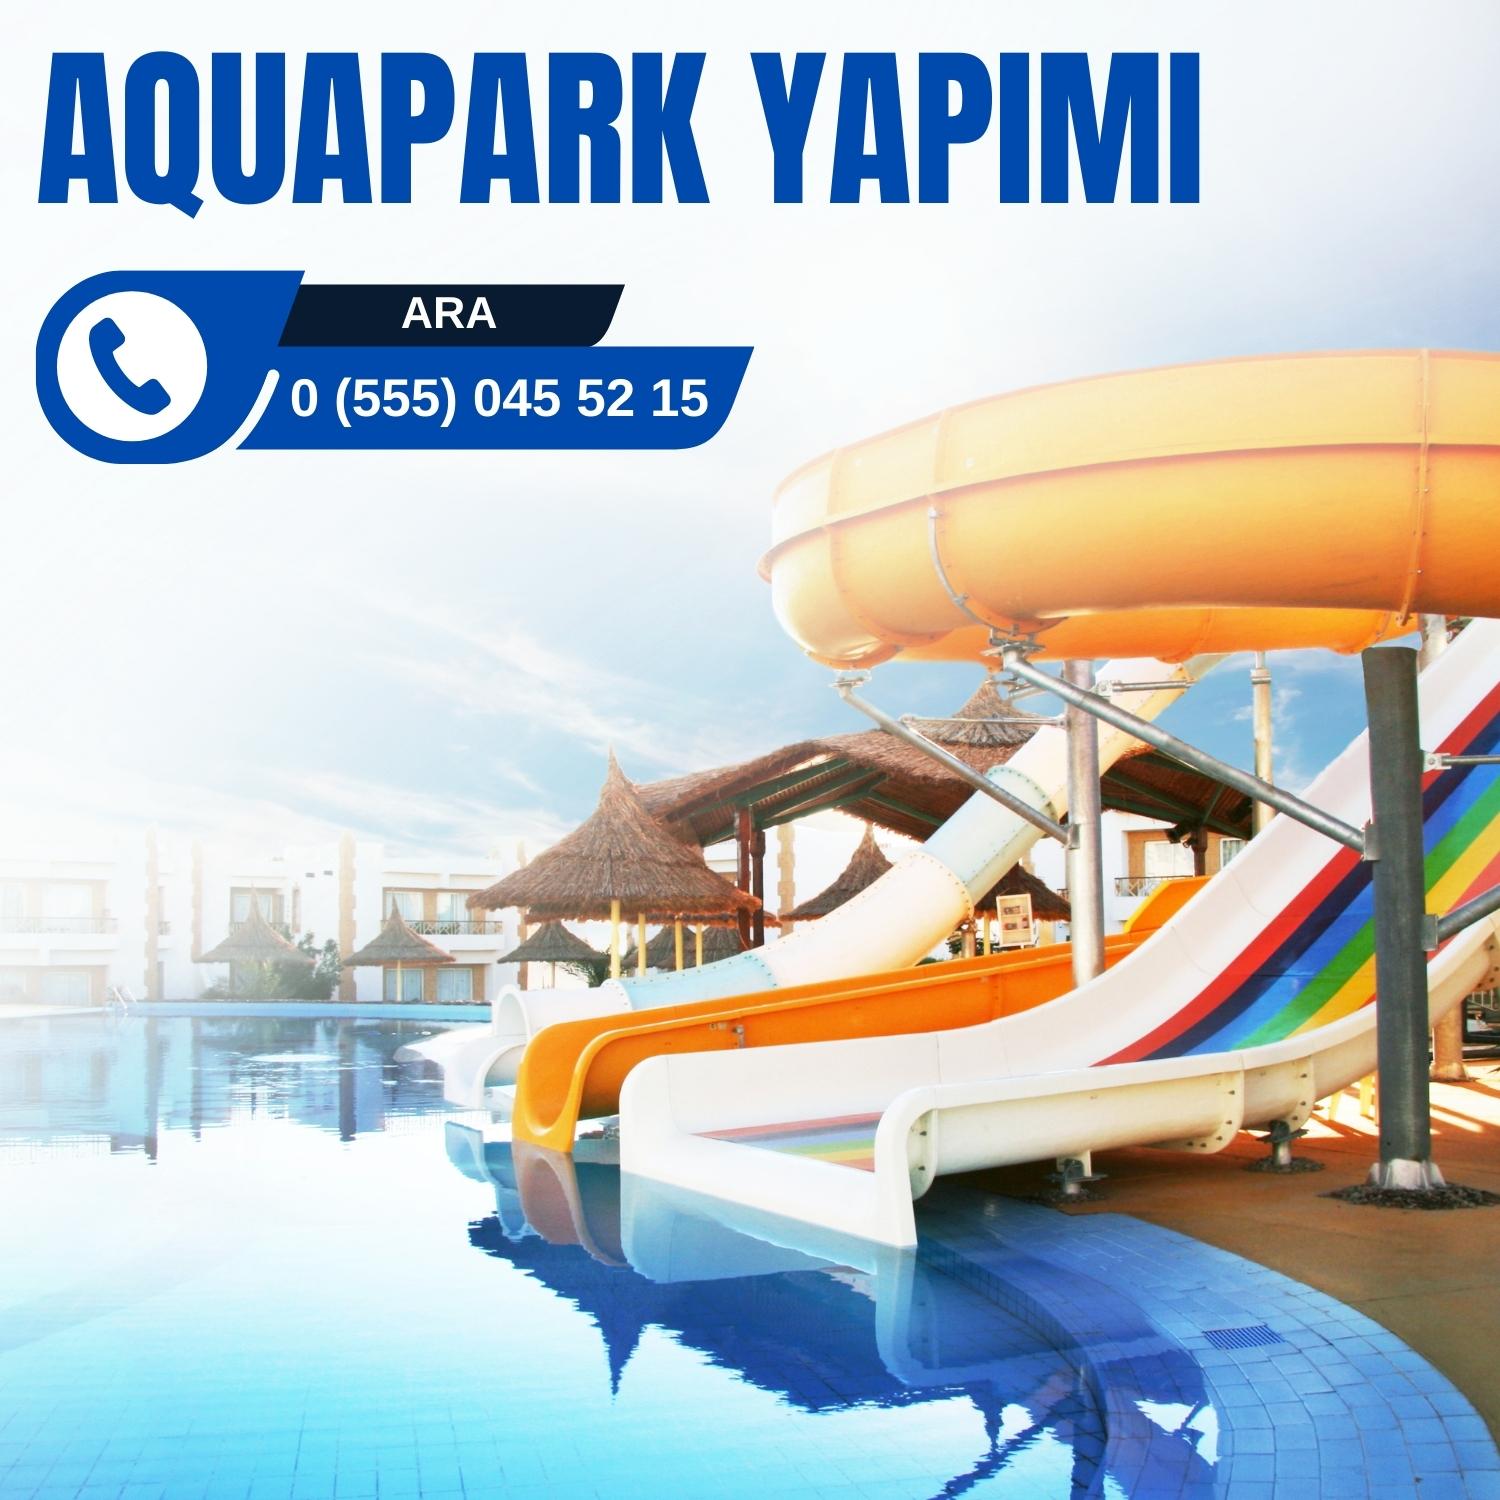 Aquapark Yapımı